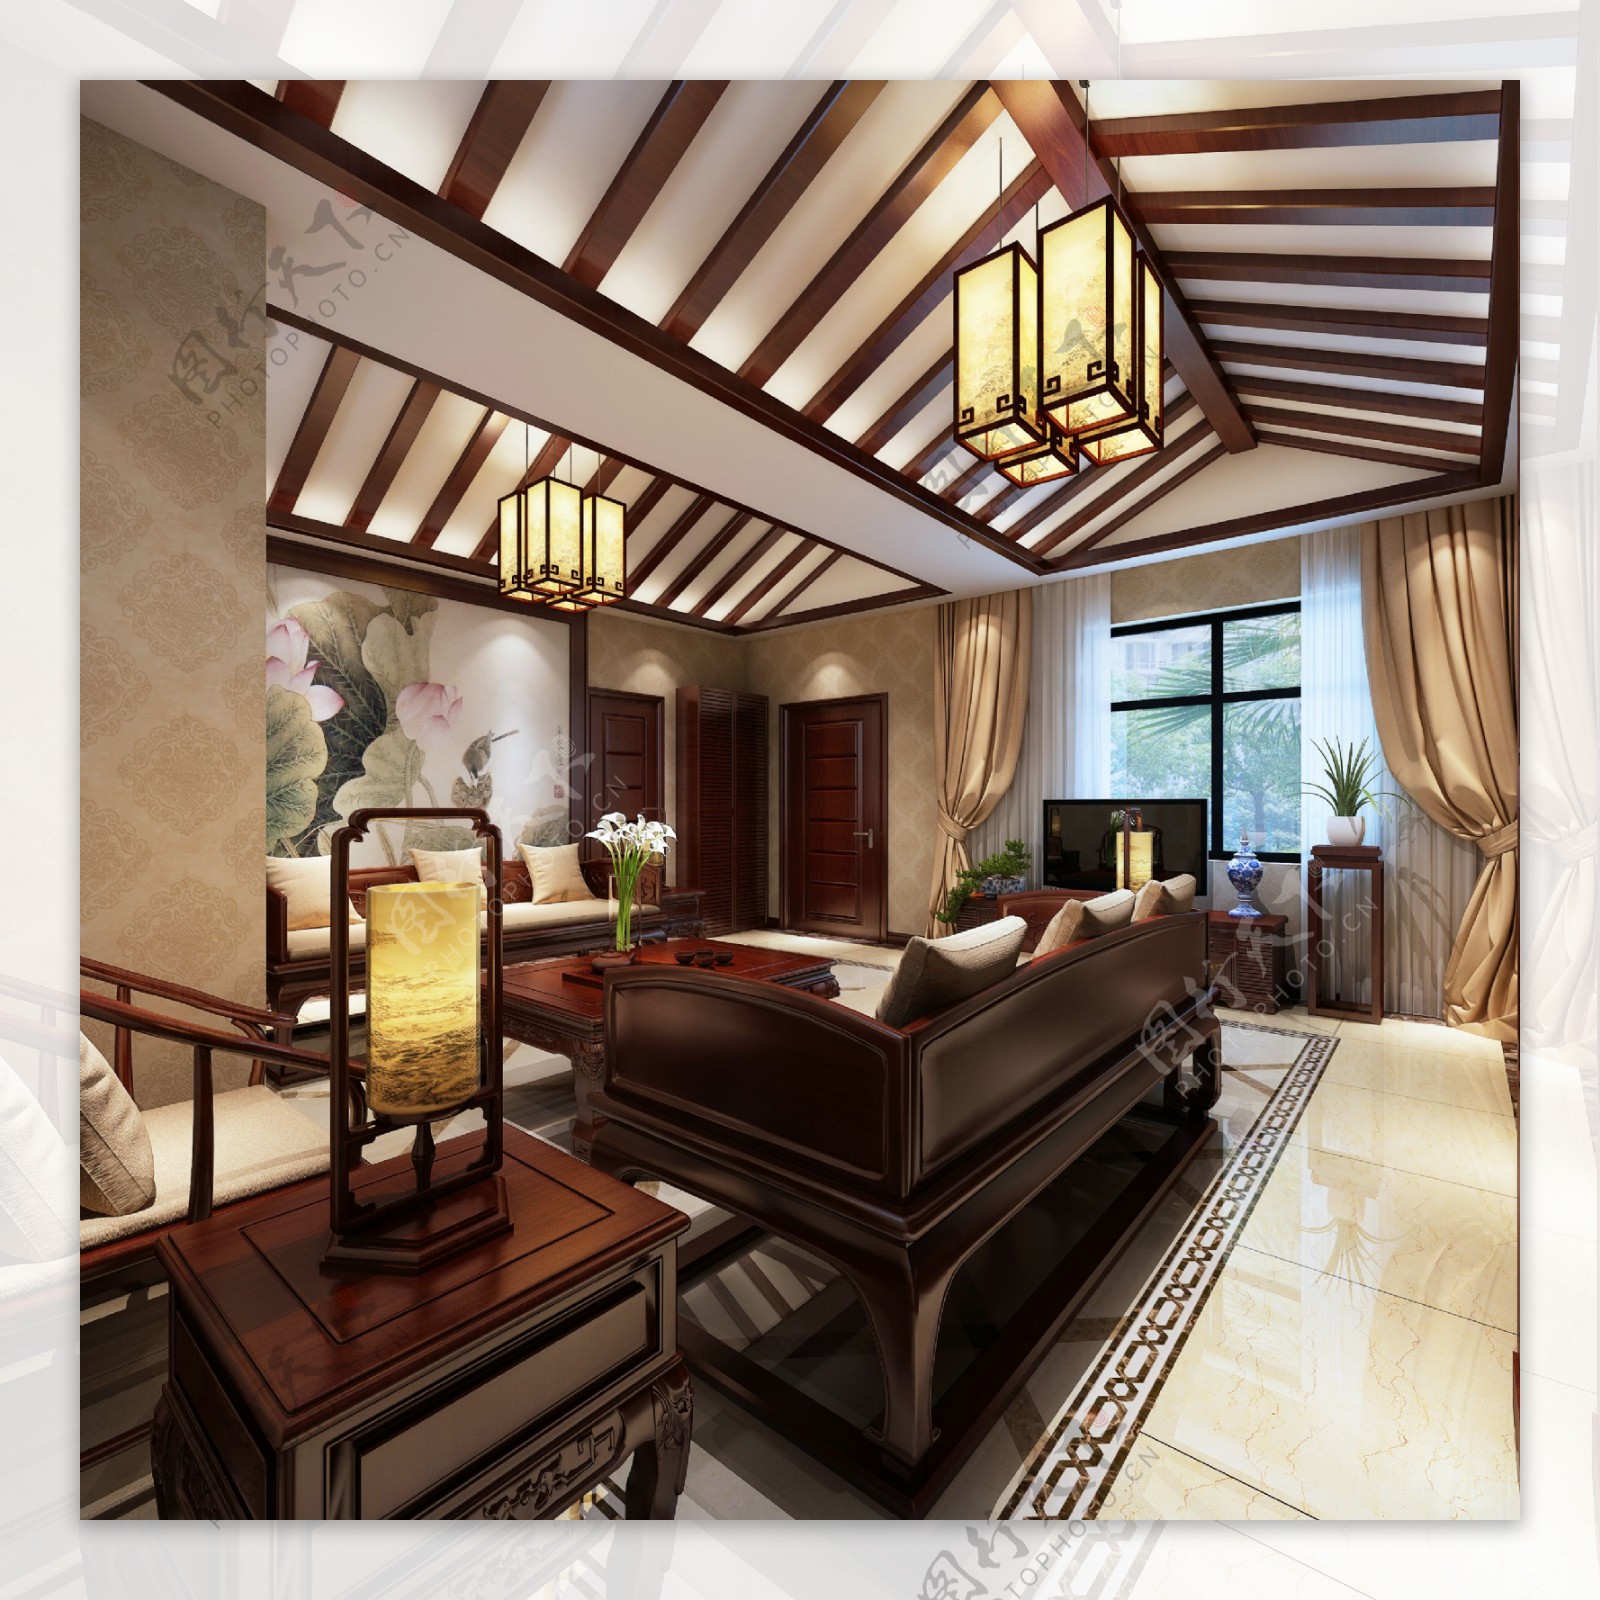 中式清雅客厅瓷砖地板室内装修效果图